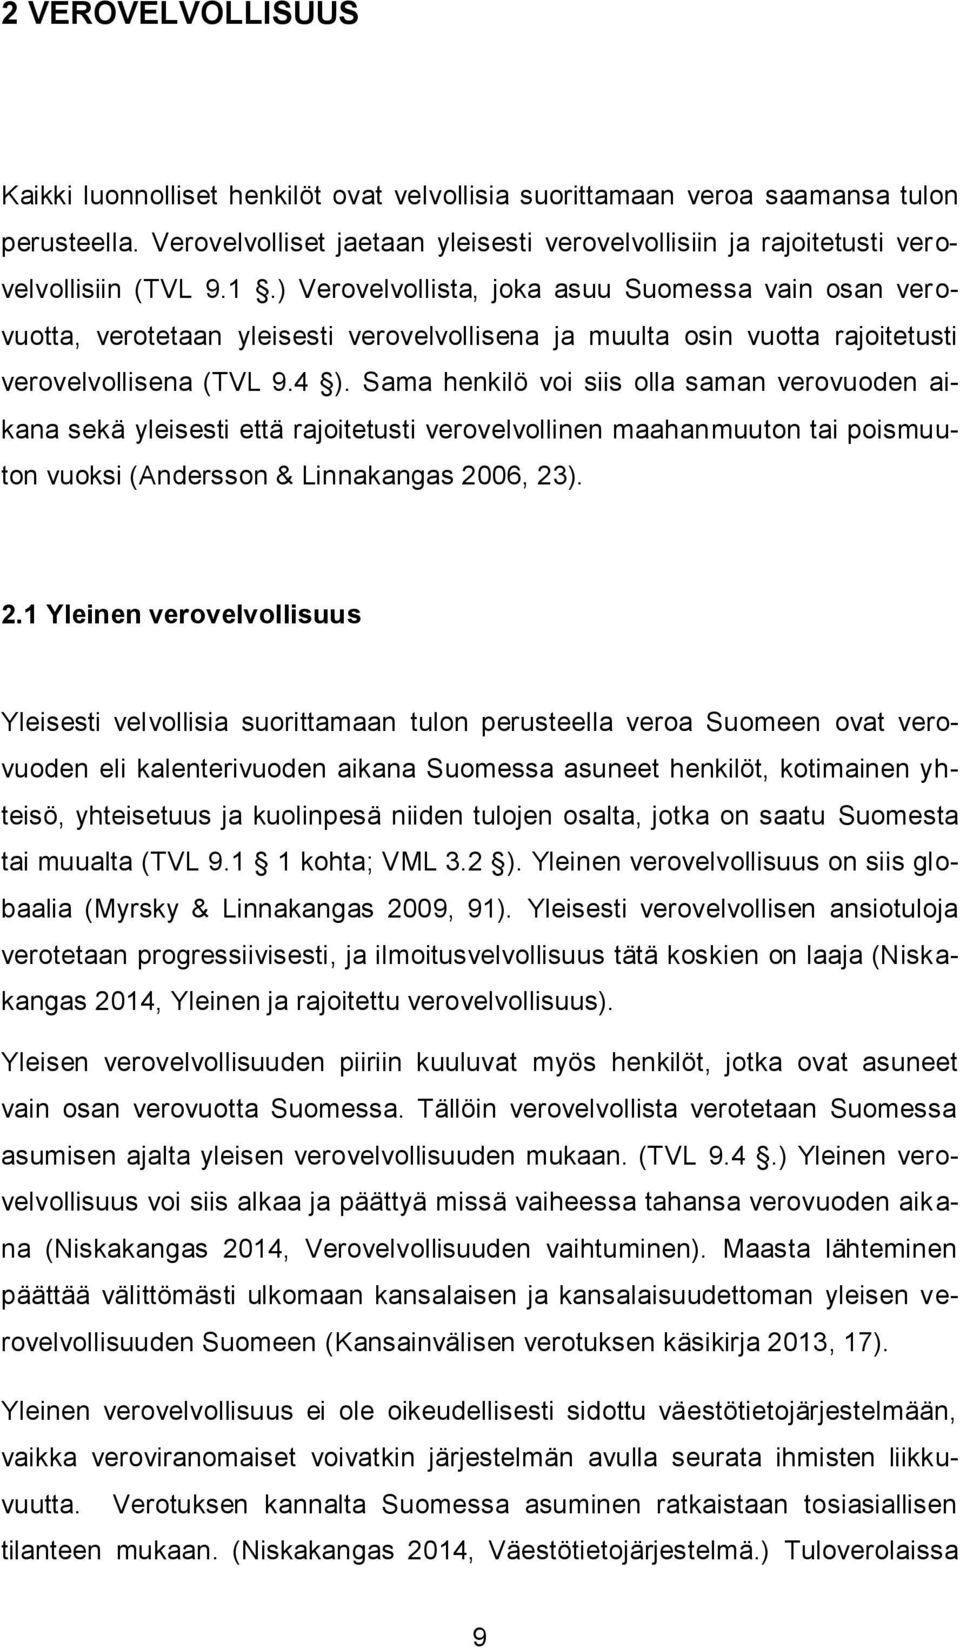 ) Verovelvollista, joka asuu Suomessa vain osan verovuotta, verotetaan yleisesti verovelvollisena ja muulta osin vuotta rajoitetusti verovelvollisena (TVL 9.4 ).